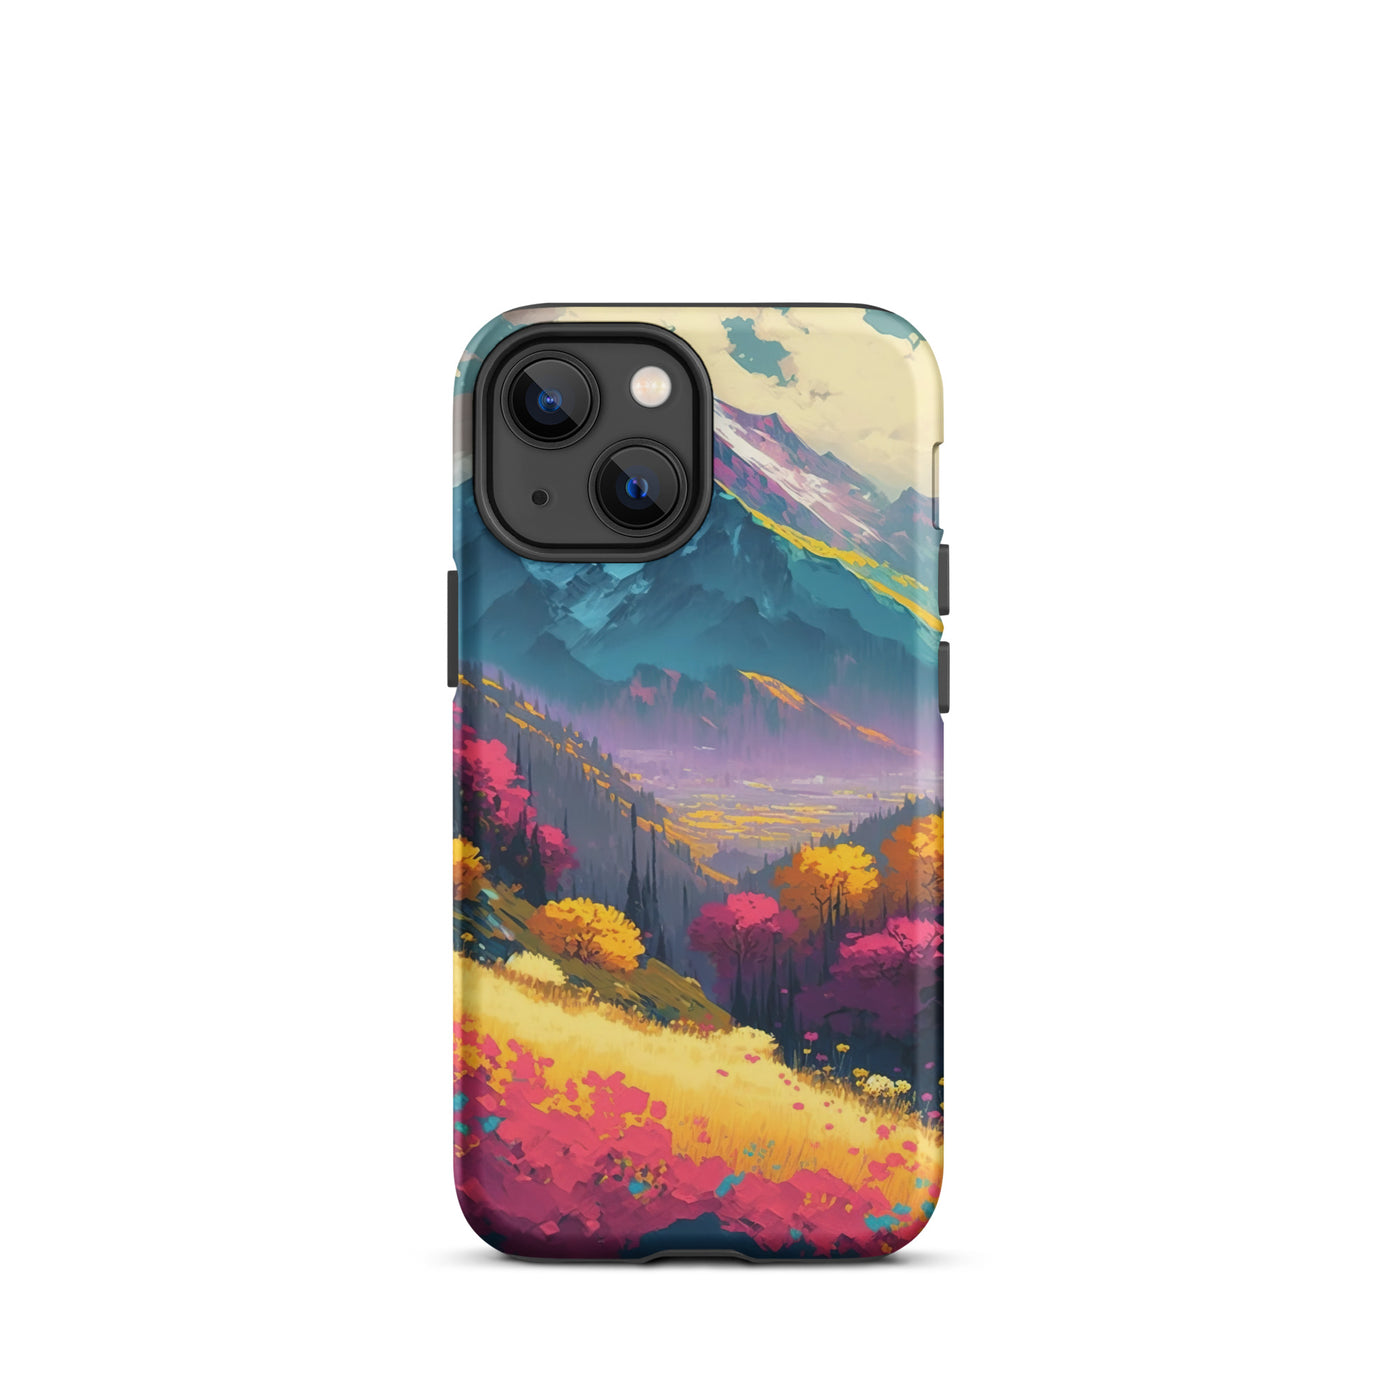 Berge, pinke und gelbe Bäume, sowie Blumen - Farbige Malerei - iPhone Schutzhülle (robust) berge xxx iPhone 13 mini